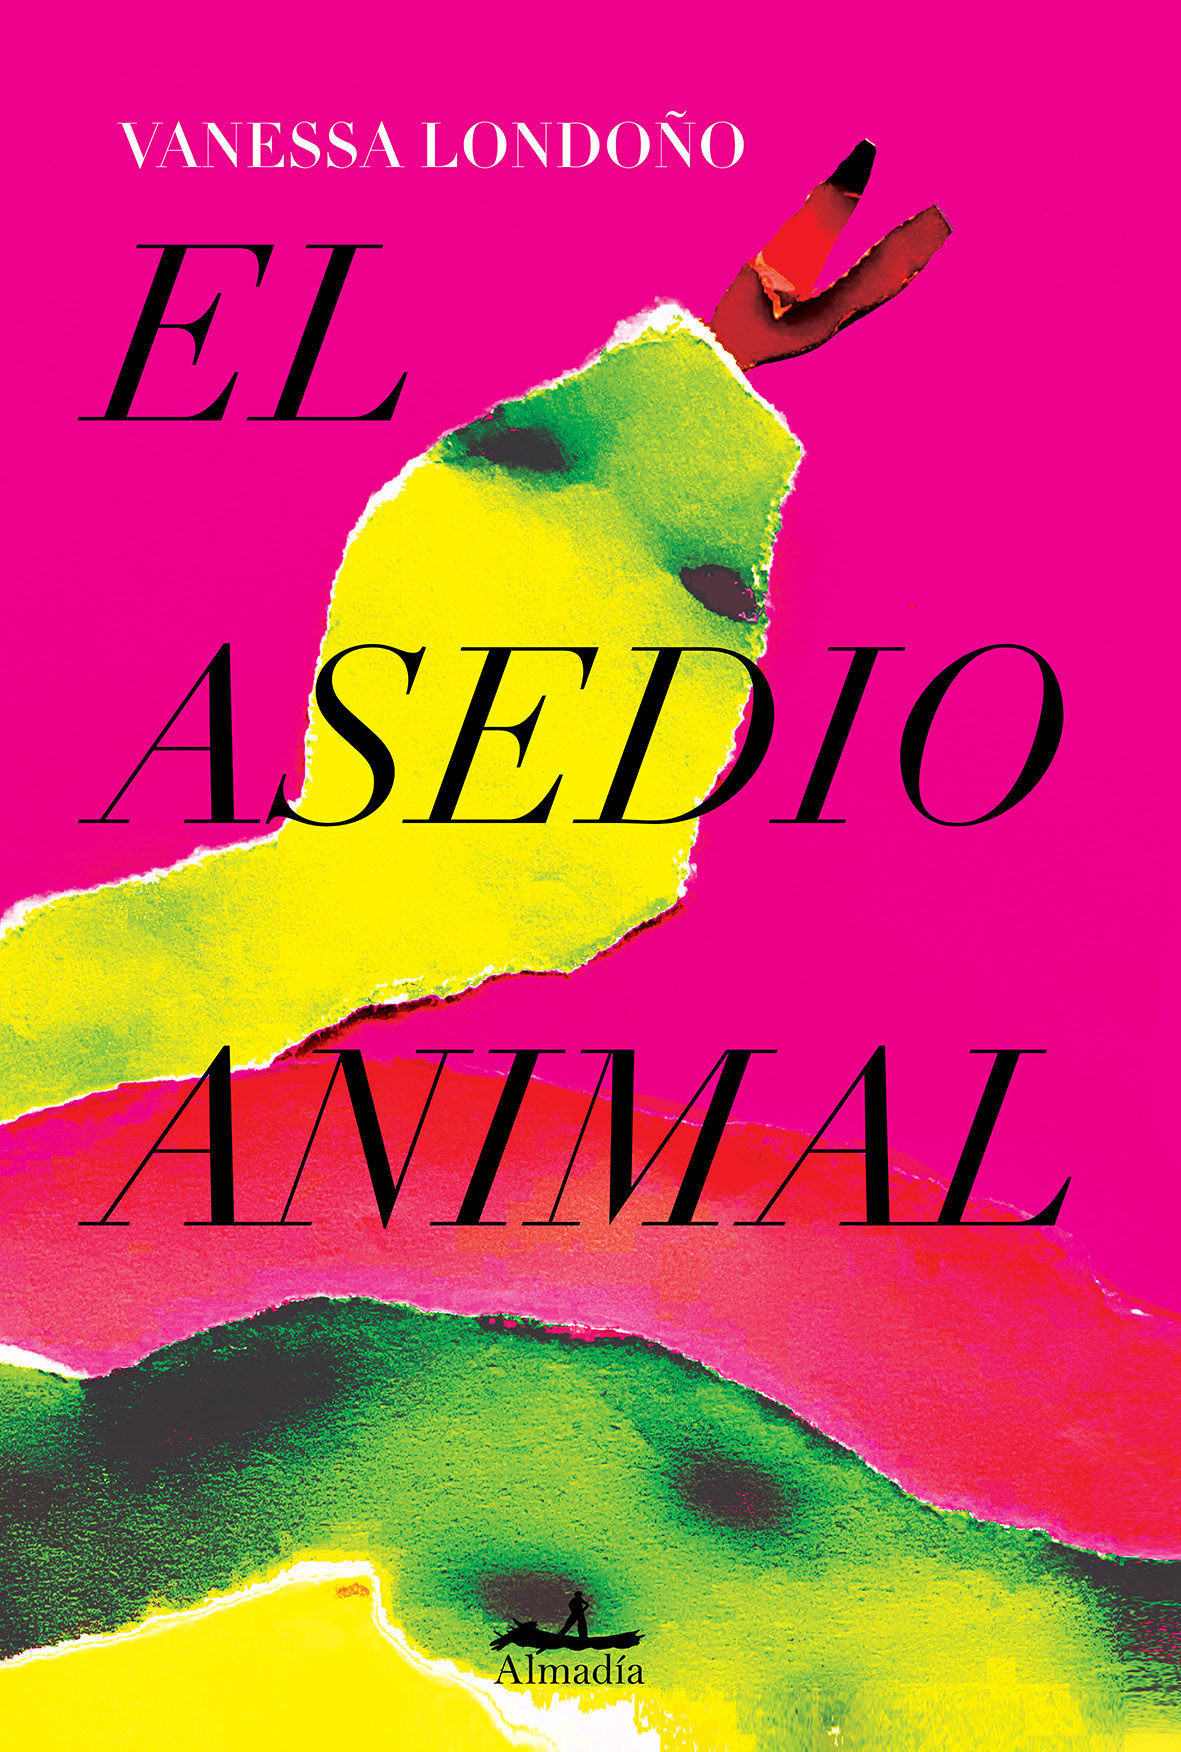 EL ASEDIO ANIMAL. 